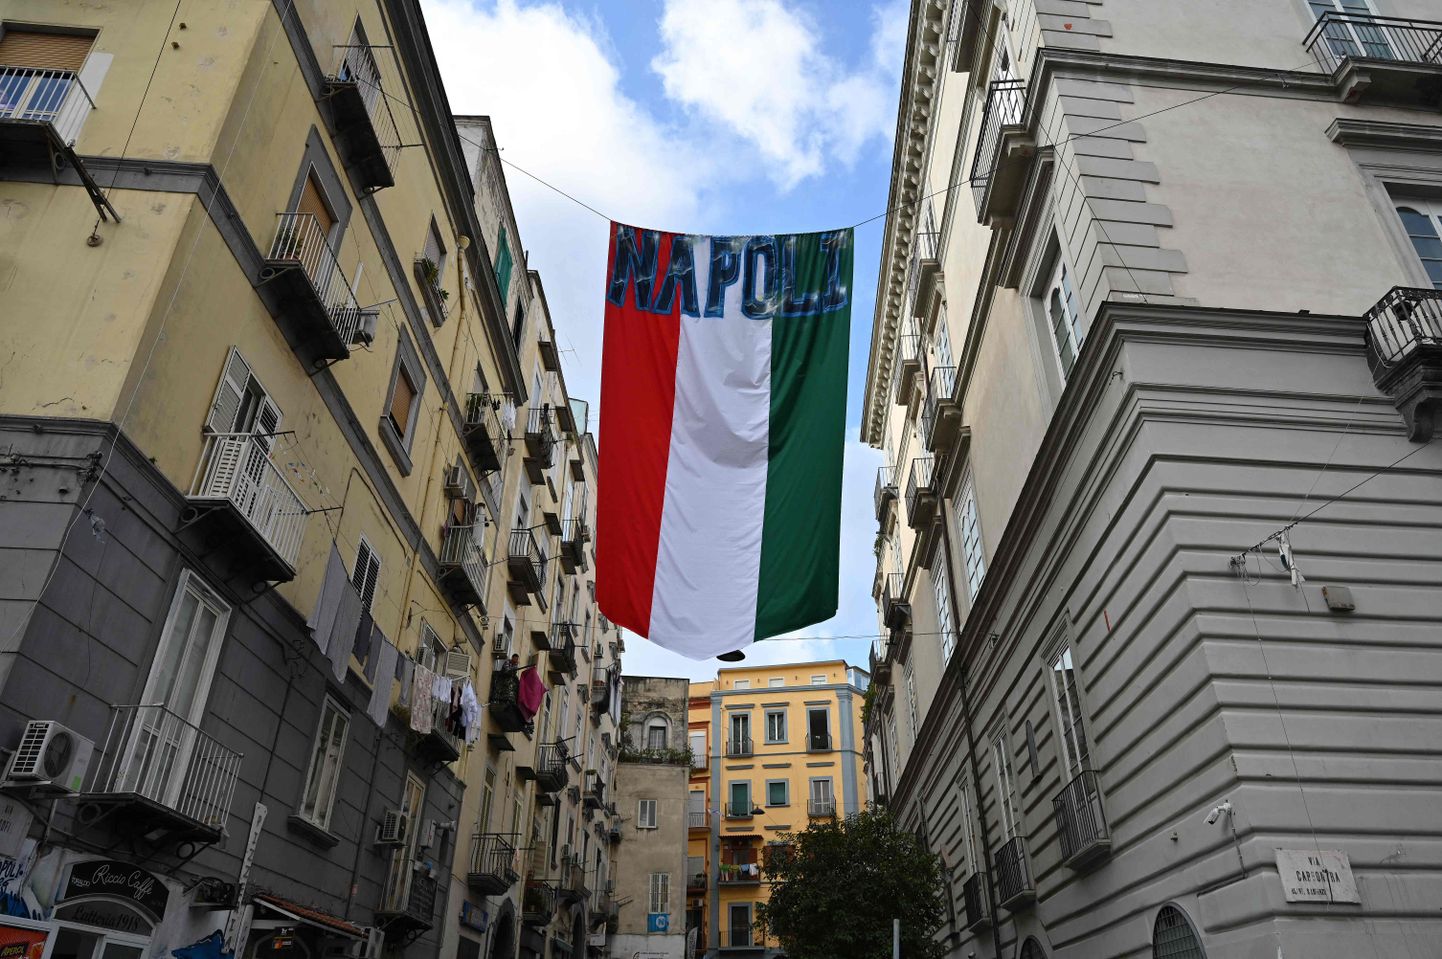 Itaalia lipp Napolis tänava kohal.